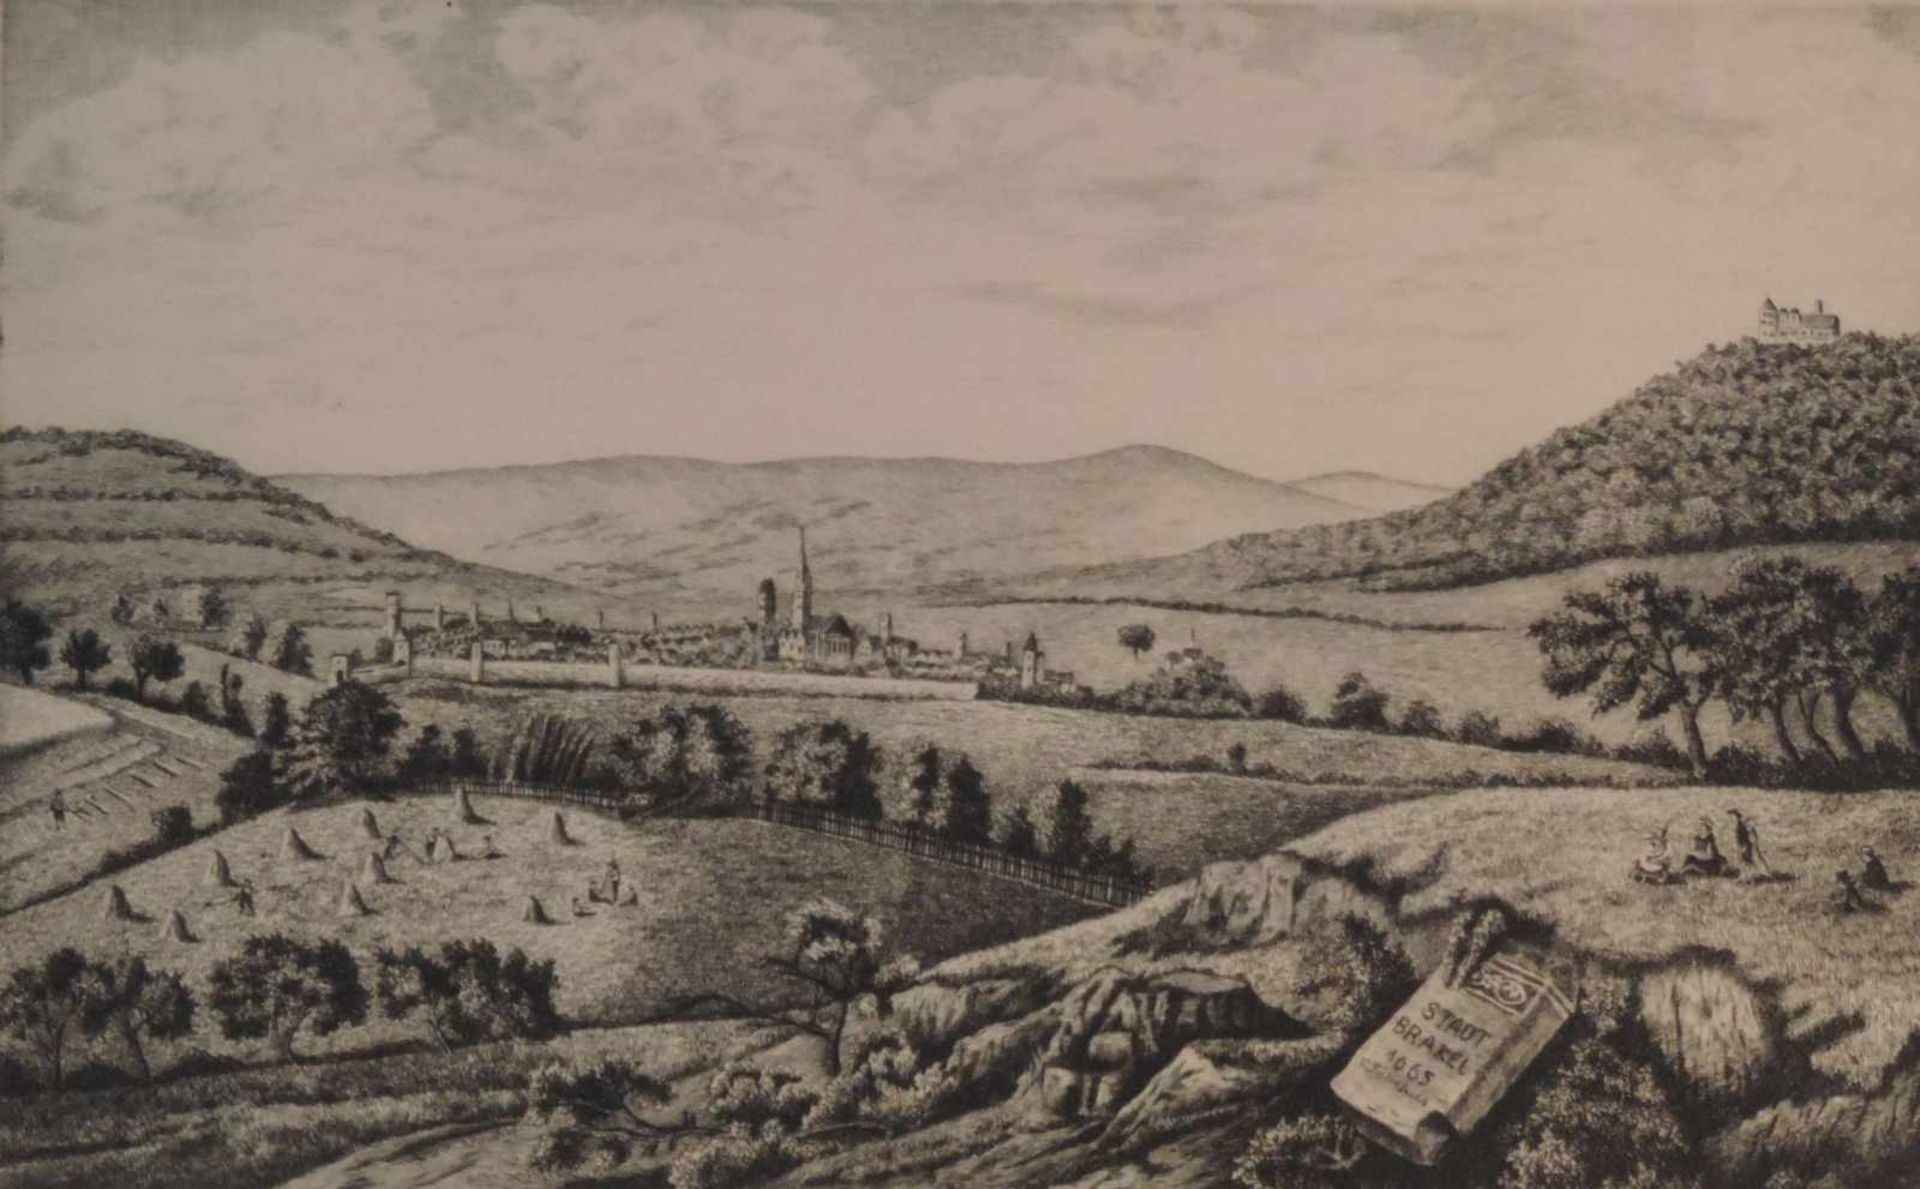 BRAKEL, Stadt, Stahlstich, Ansicht von Südosten, re u im Meilenstein bez "1665 C. Fabrikus", re u